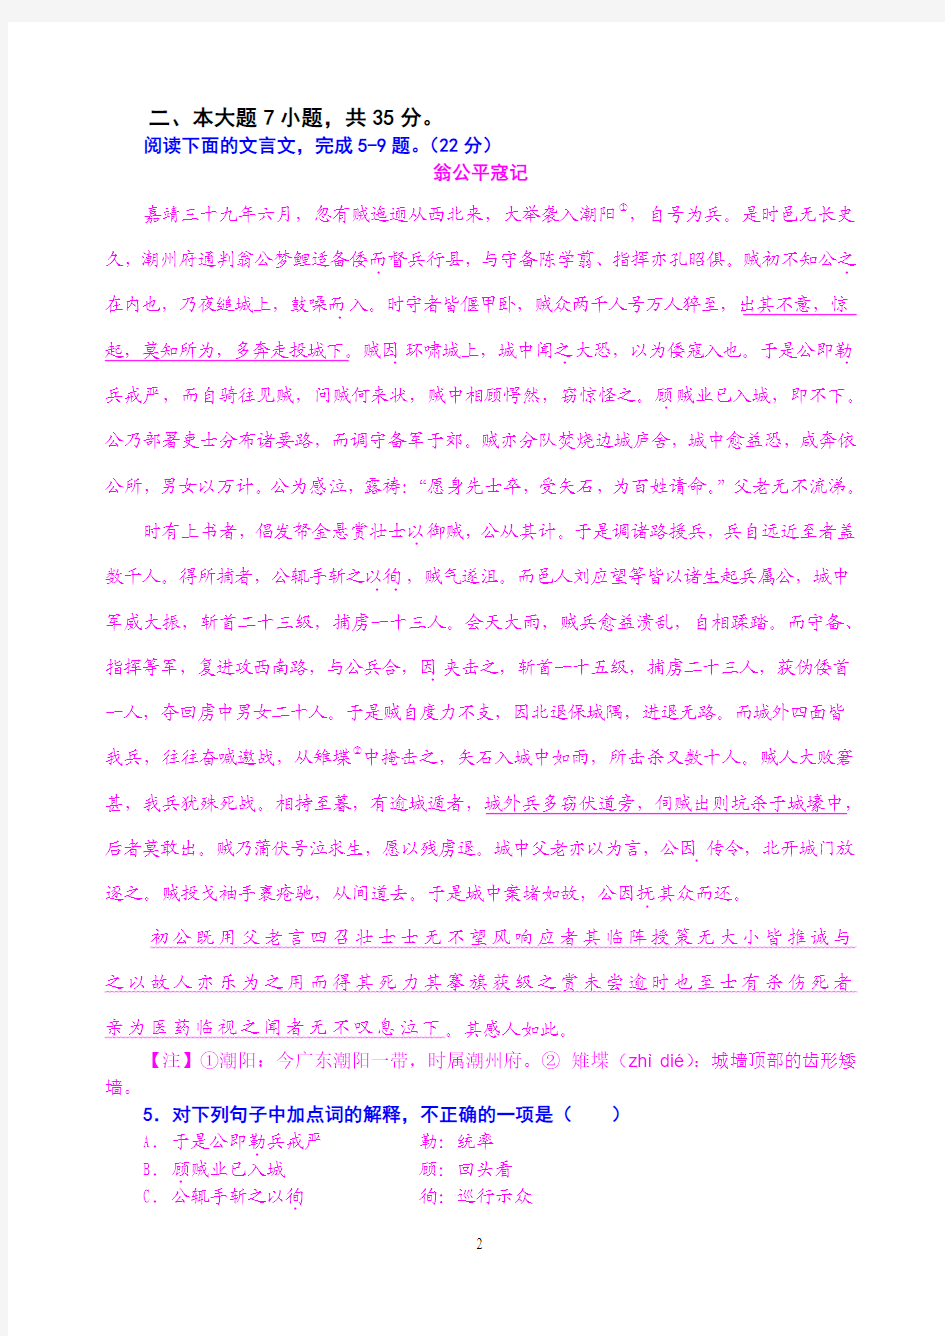 广东省兴宁市第一中学高三语文2012年考测试题